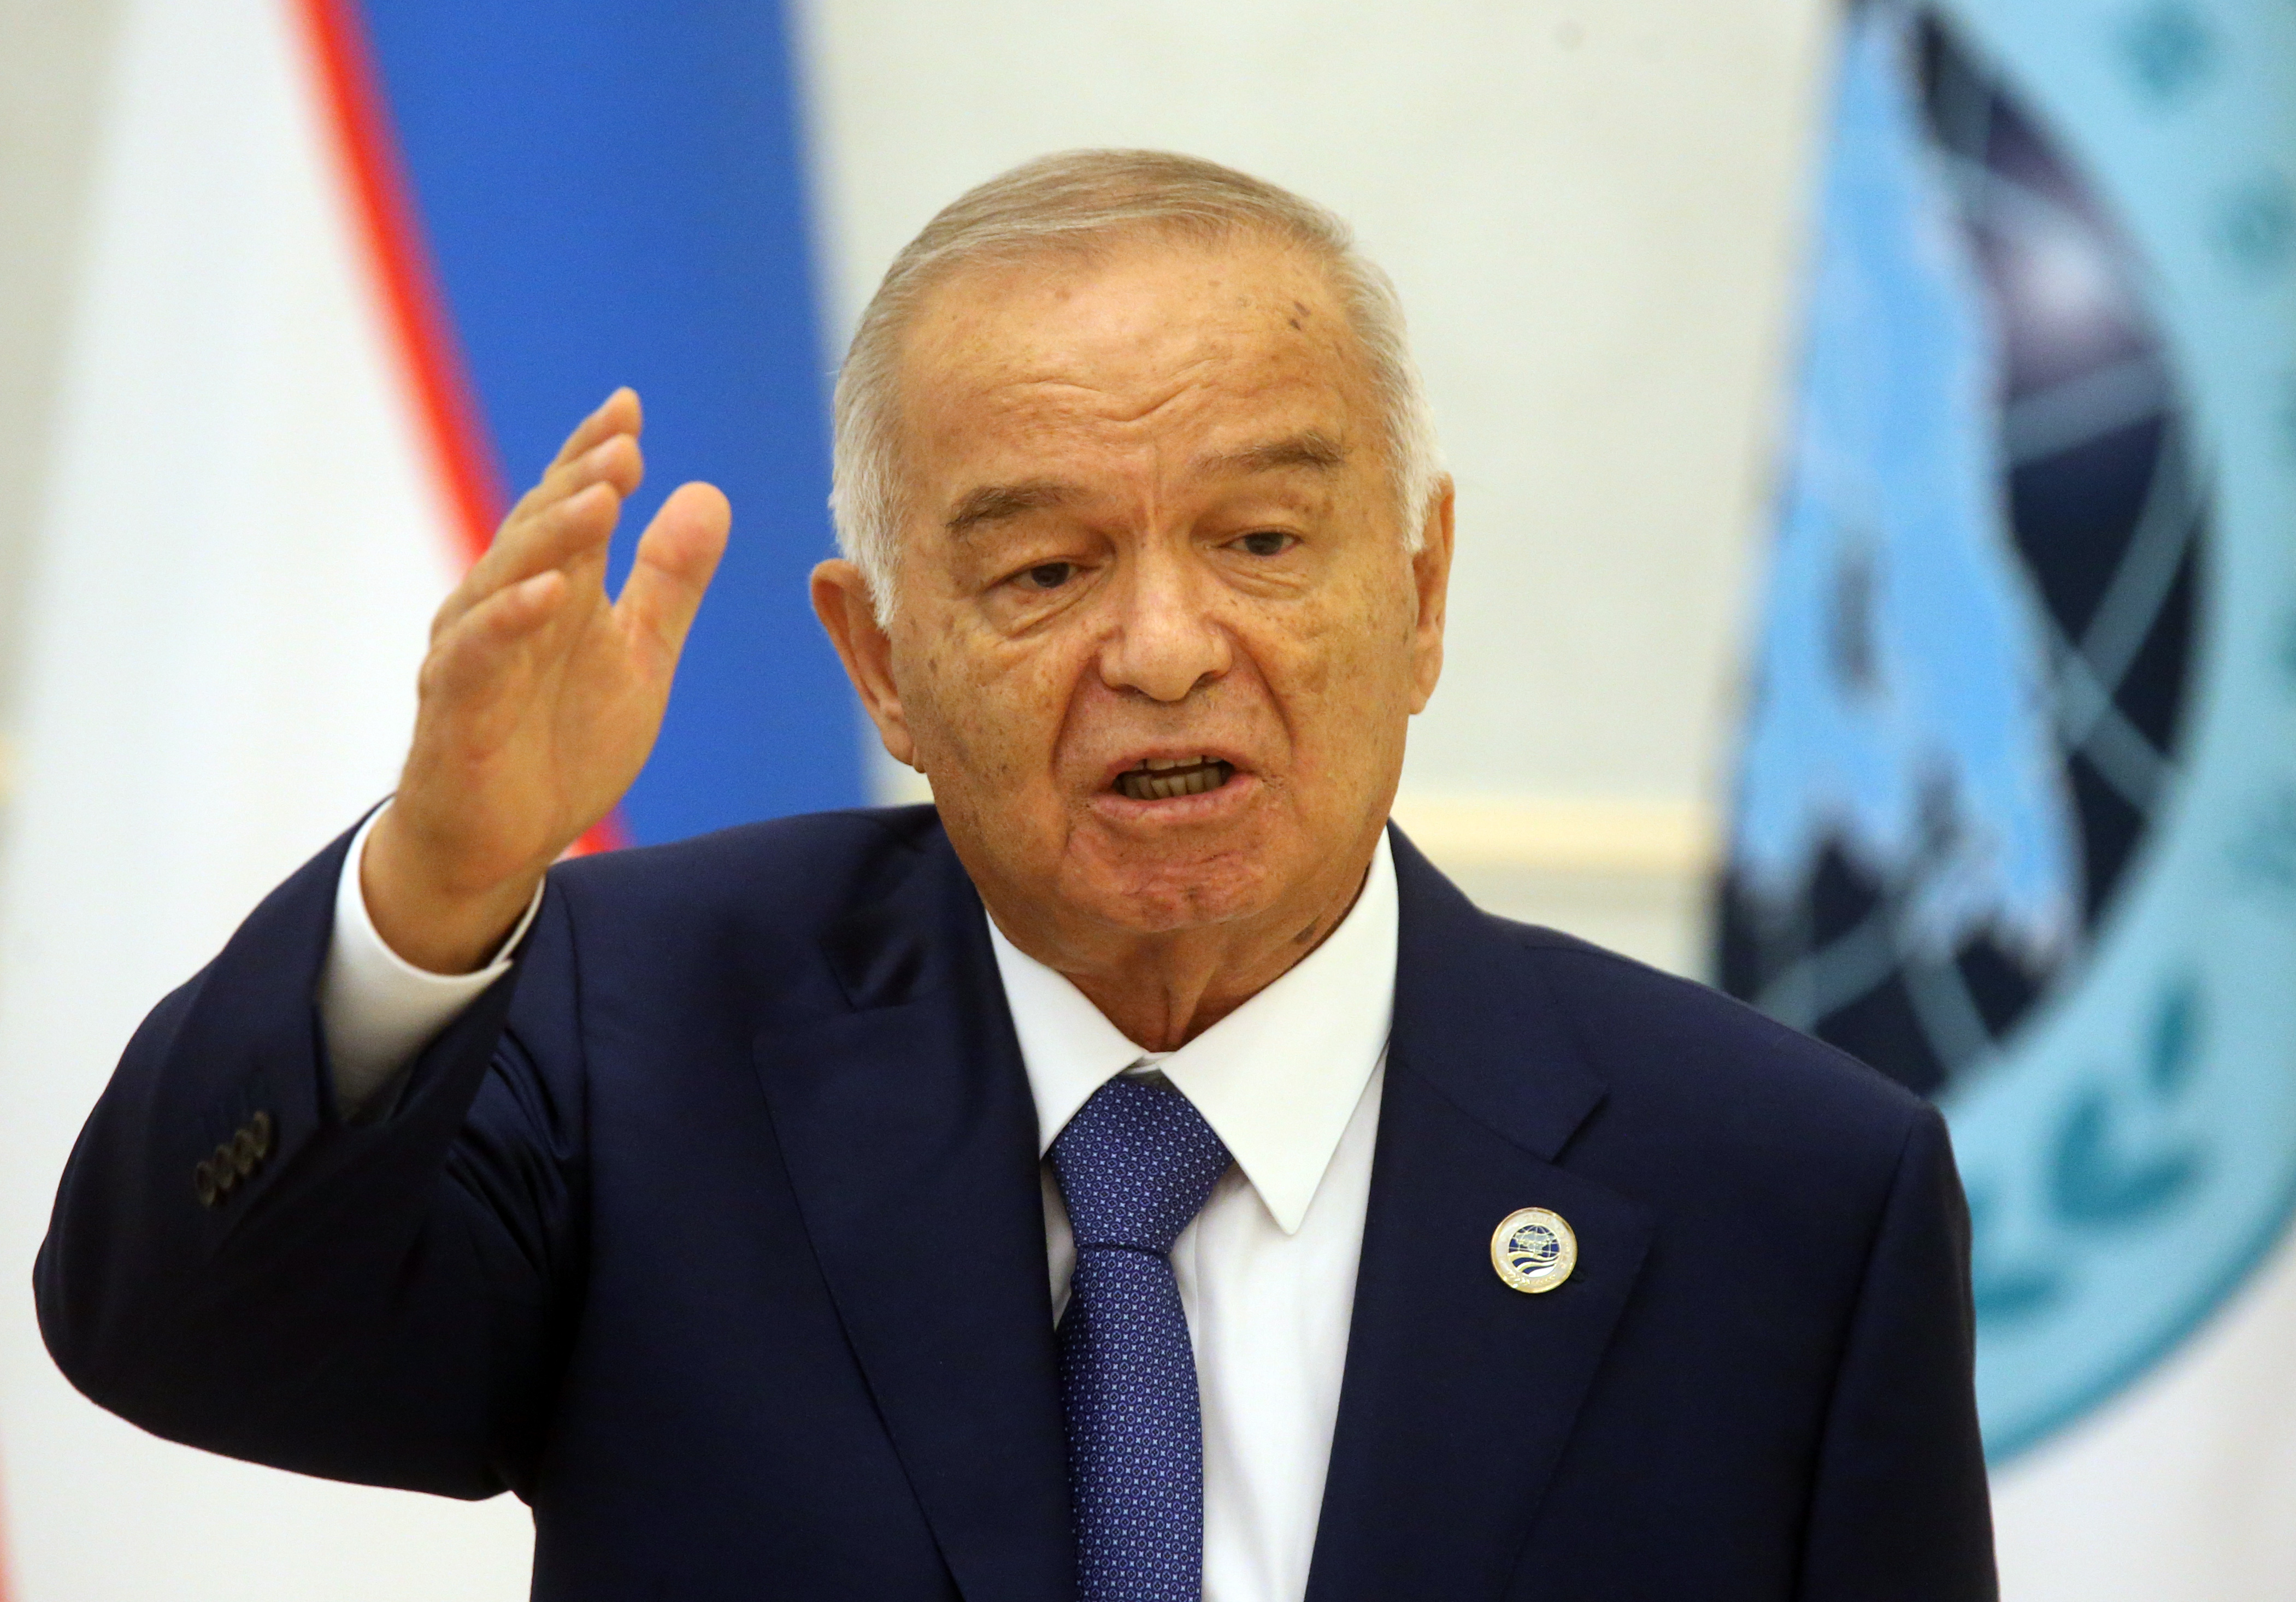 Uzbek President Islam Karimov speaks during the Shanghai Cooperation Organisation (SCO) Summit in Tashkent, Uzbekistan, on June 24, 2016. (Mikhail Svetlov—Getty Images)